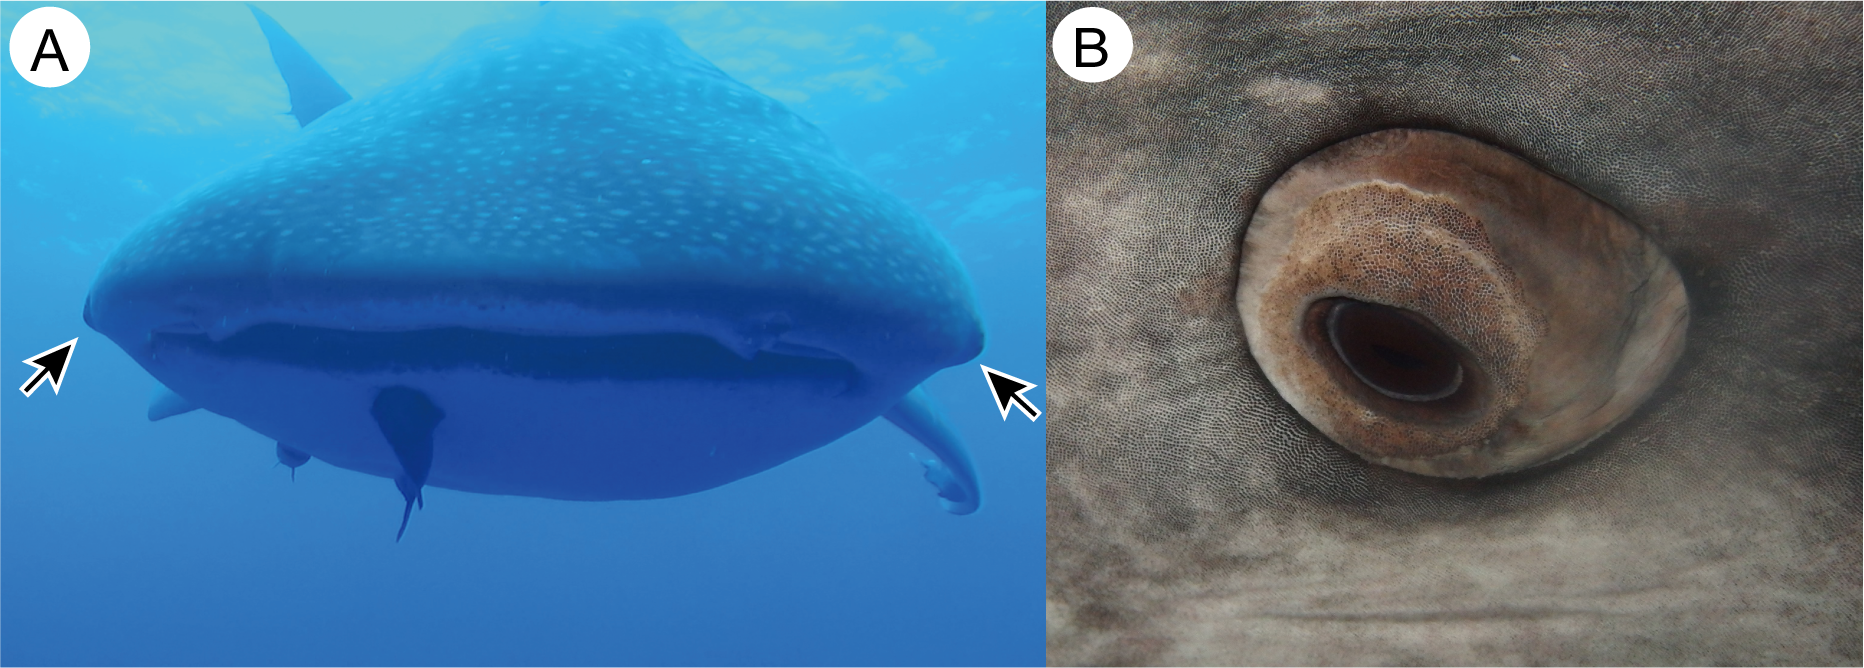 У китовых акул глаза покрыты зубчиками.Вокруг Света. Украина